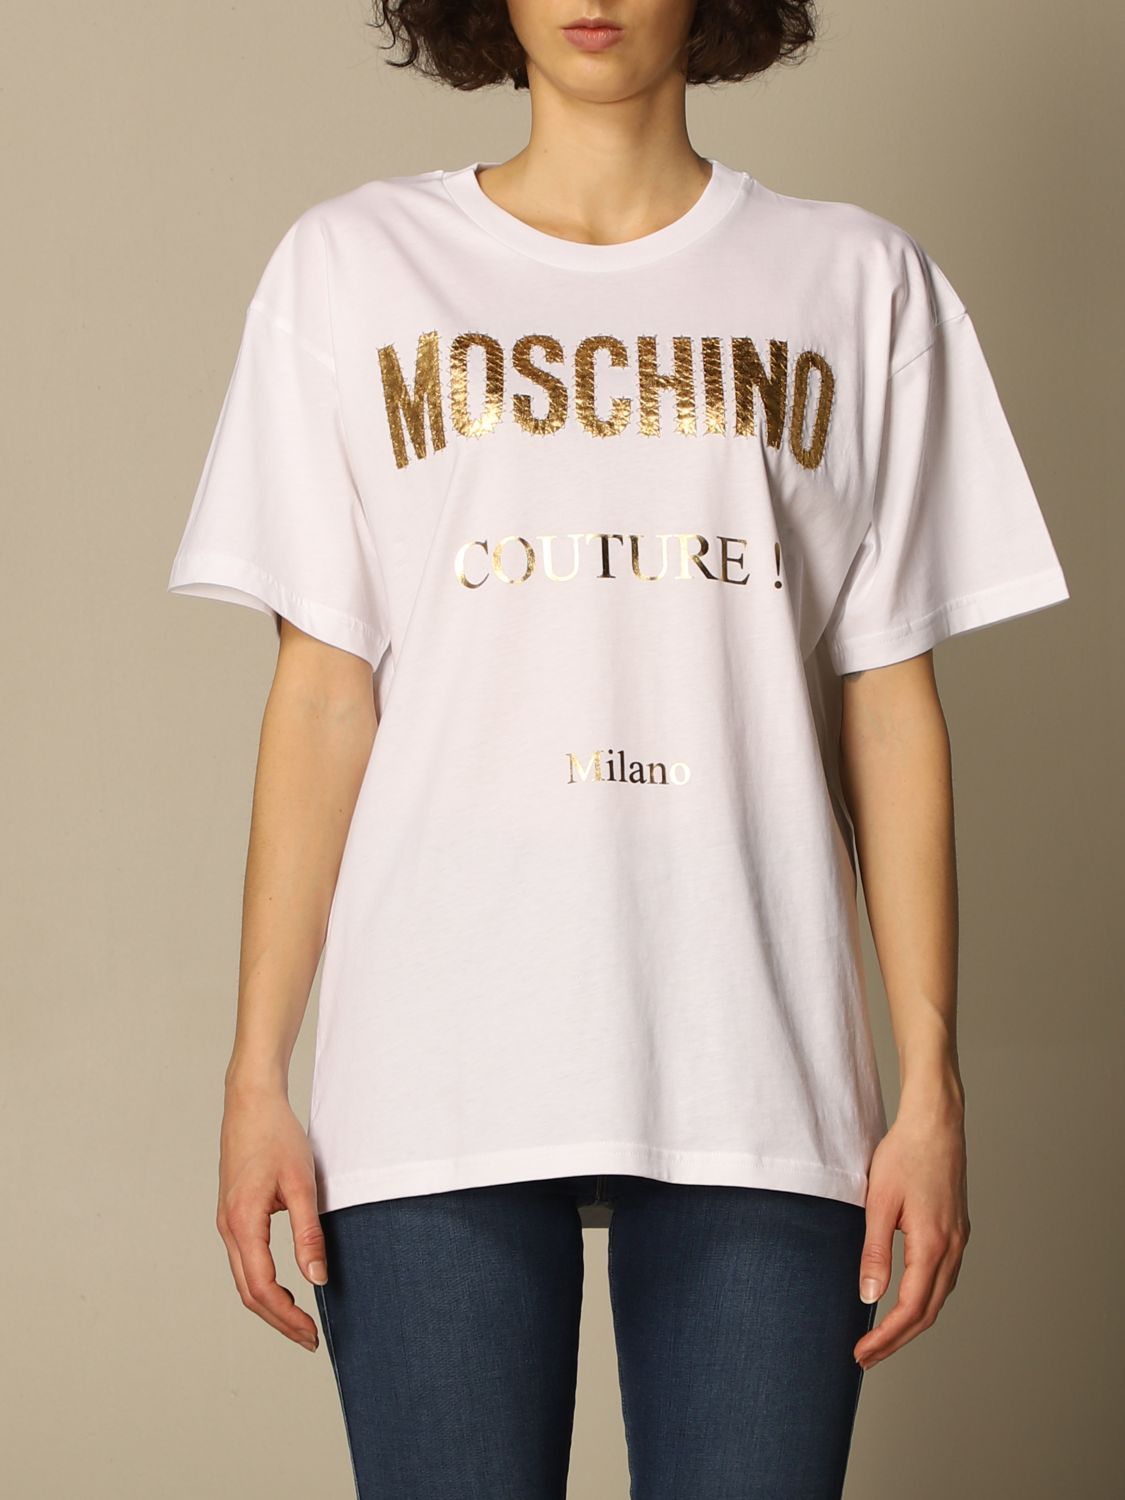 moschino white t shirt women's